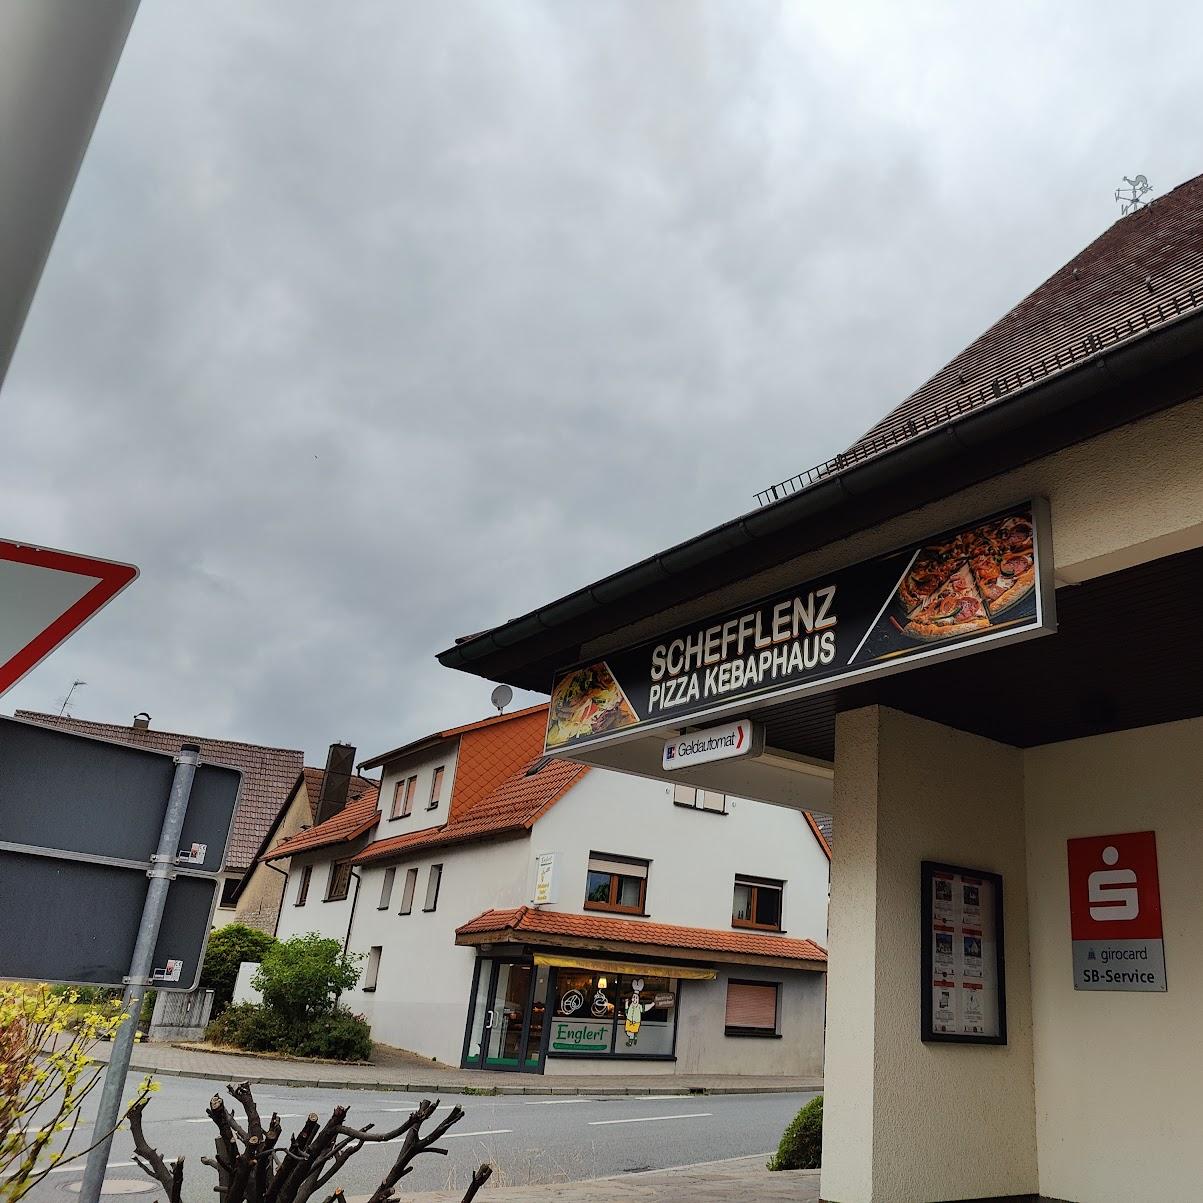 Restaurant "er Pizza Kebabhaus" in Schefflenz